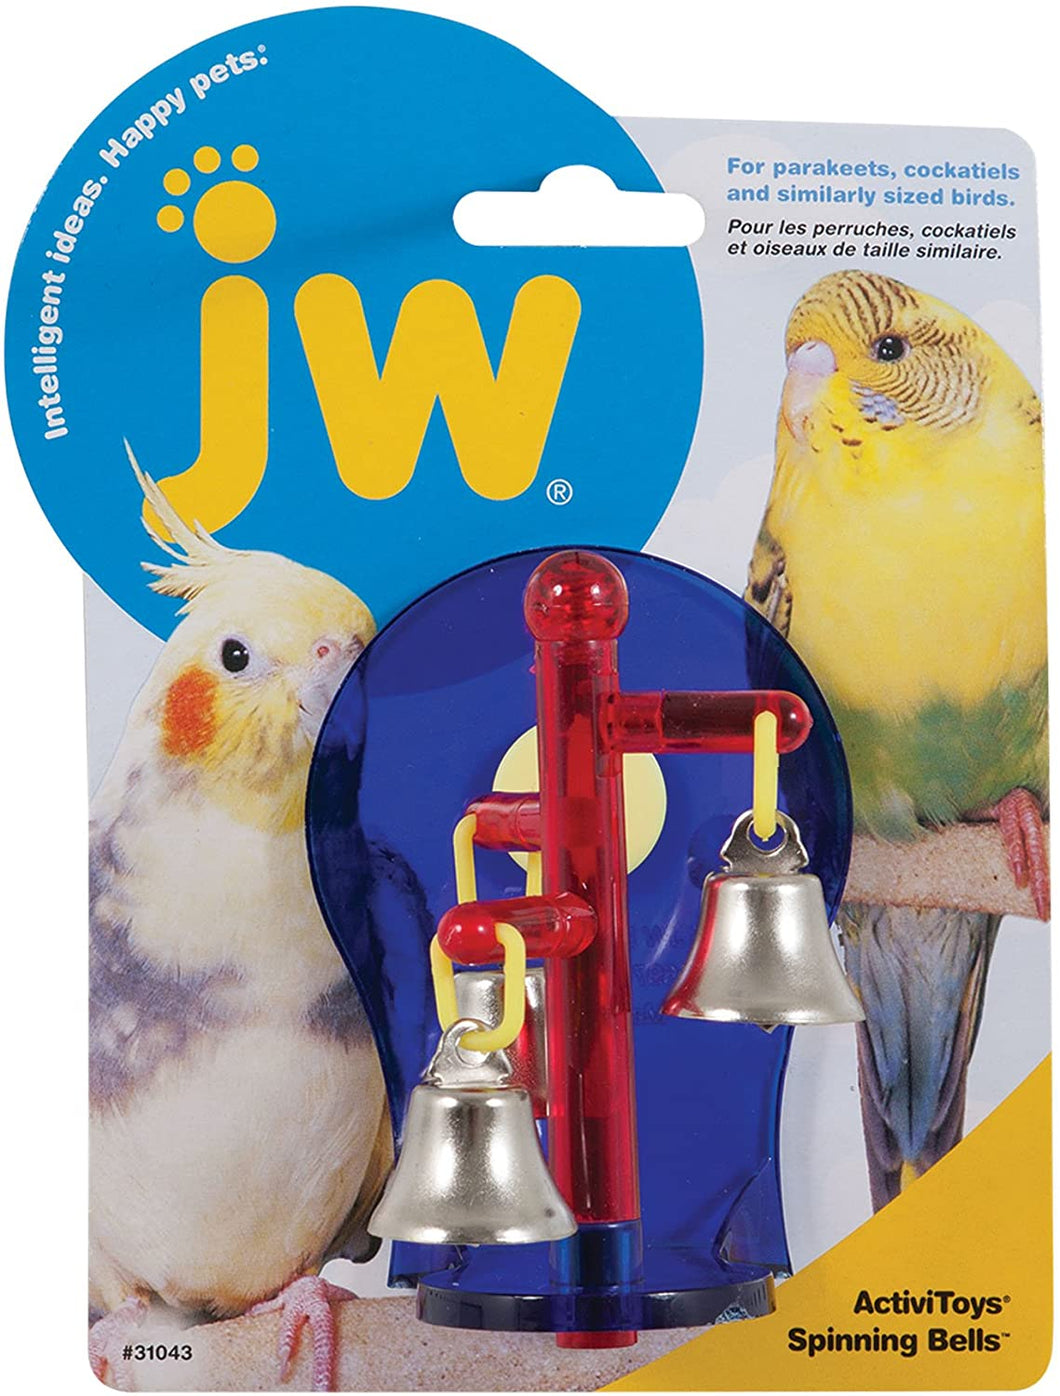 JW Bird Toy Spinning Bells